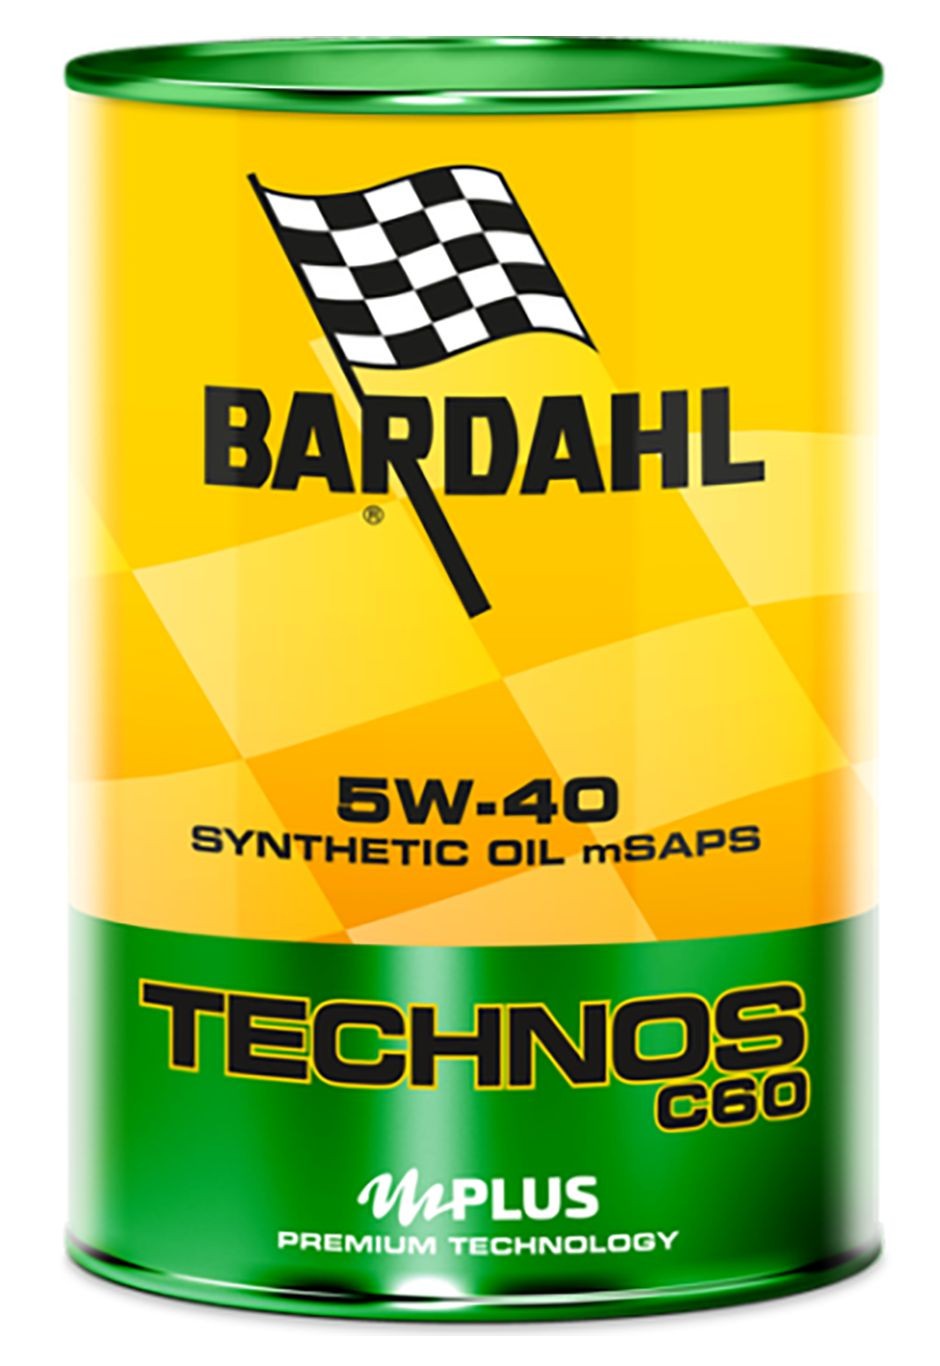 Bardahl TECHNOS C60 5W40 MSAPS Olio Motore Lubrificante Auto